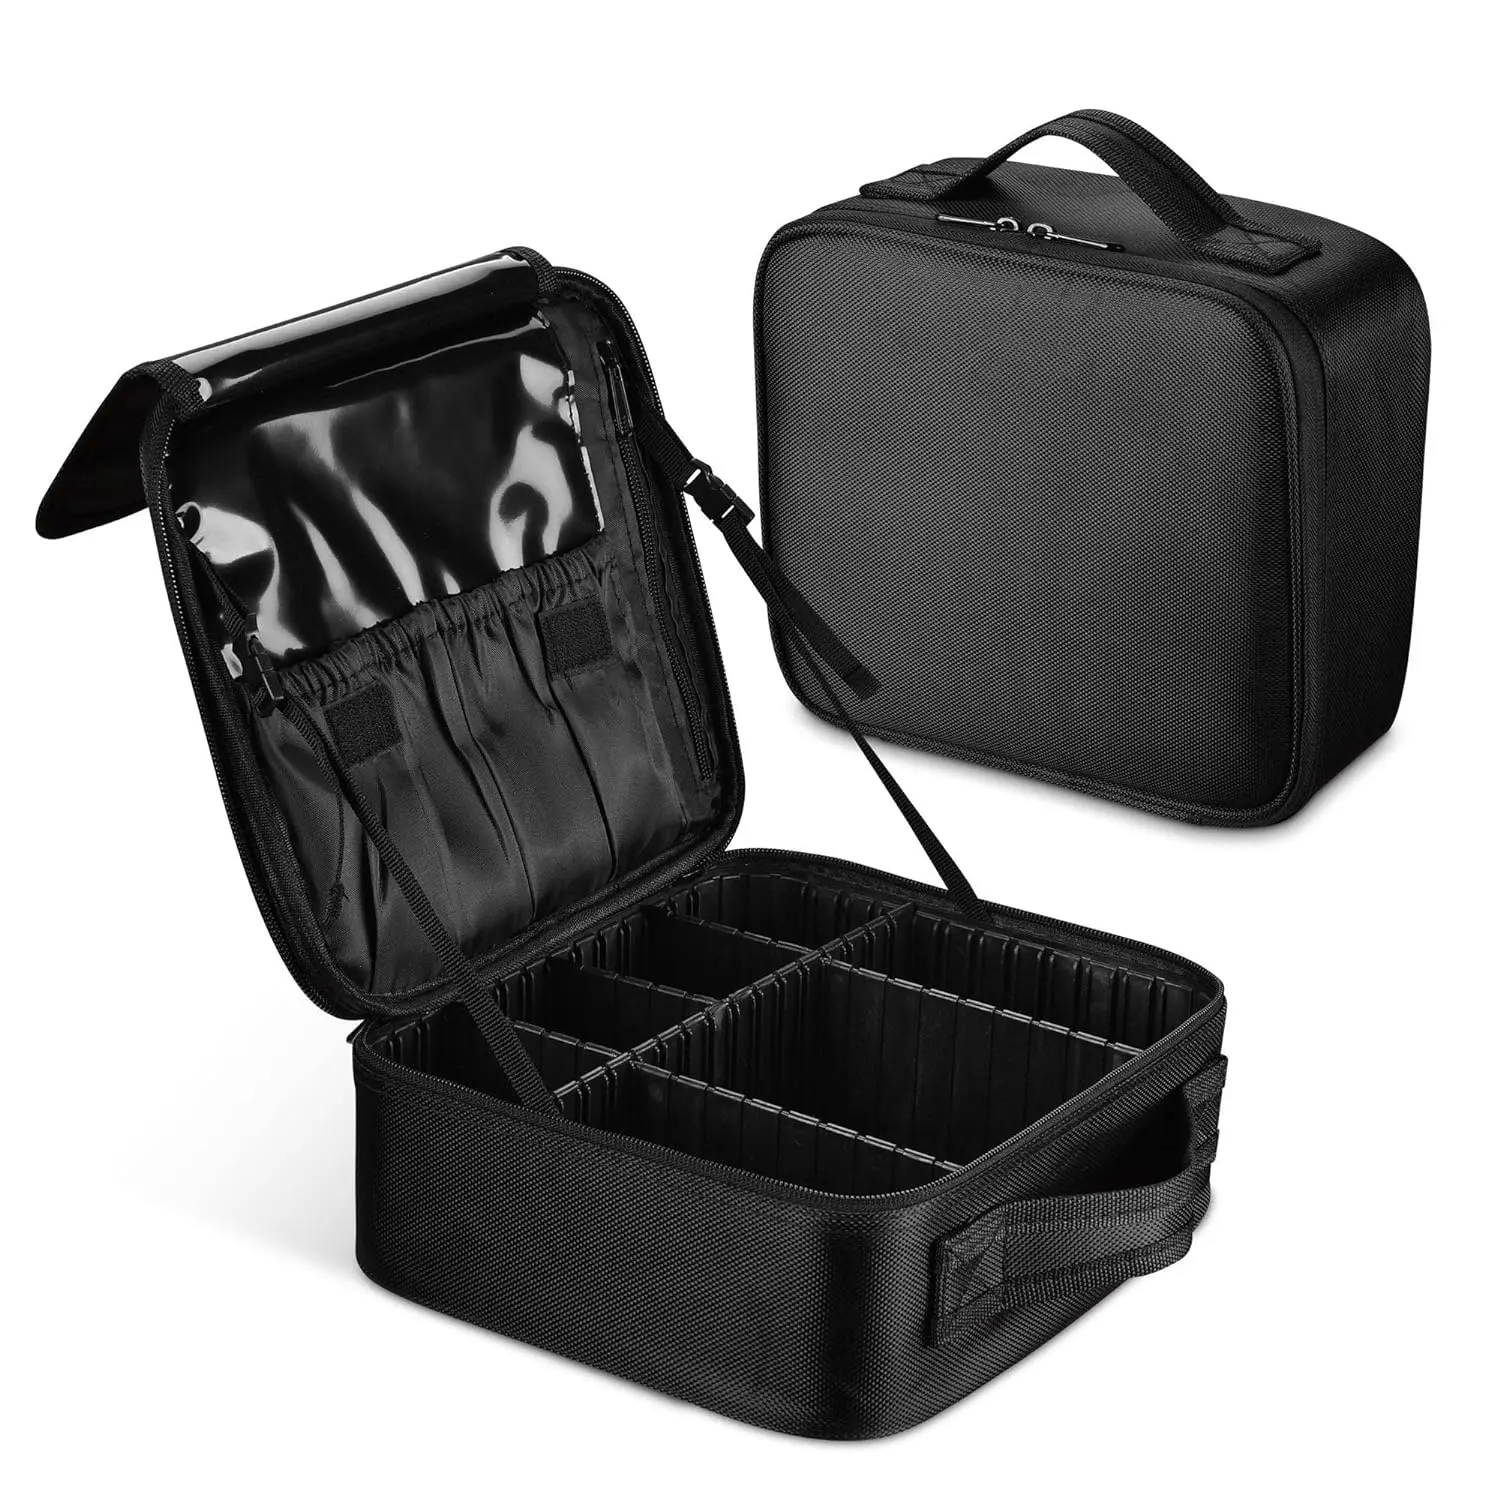 Travel Makeup Case Makeup Organizer Storage Brush Holder with Adjustable Dividers Portable Artist Storage Bag